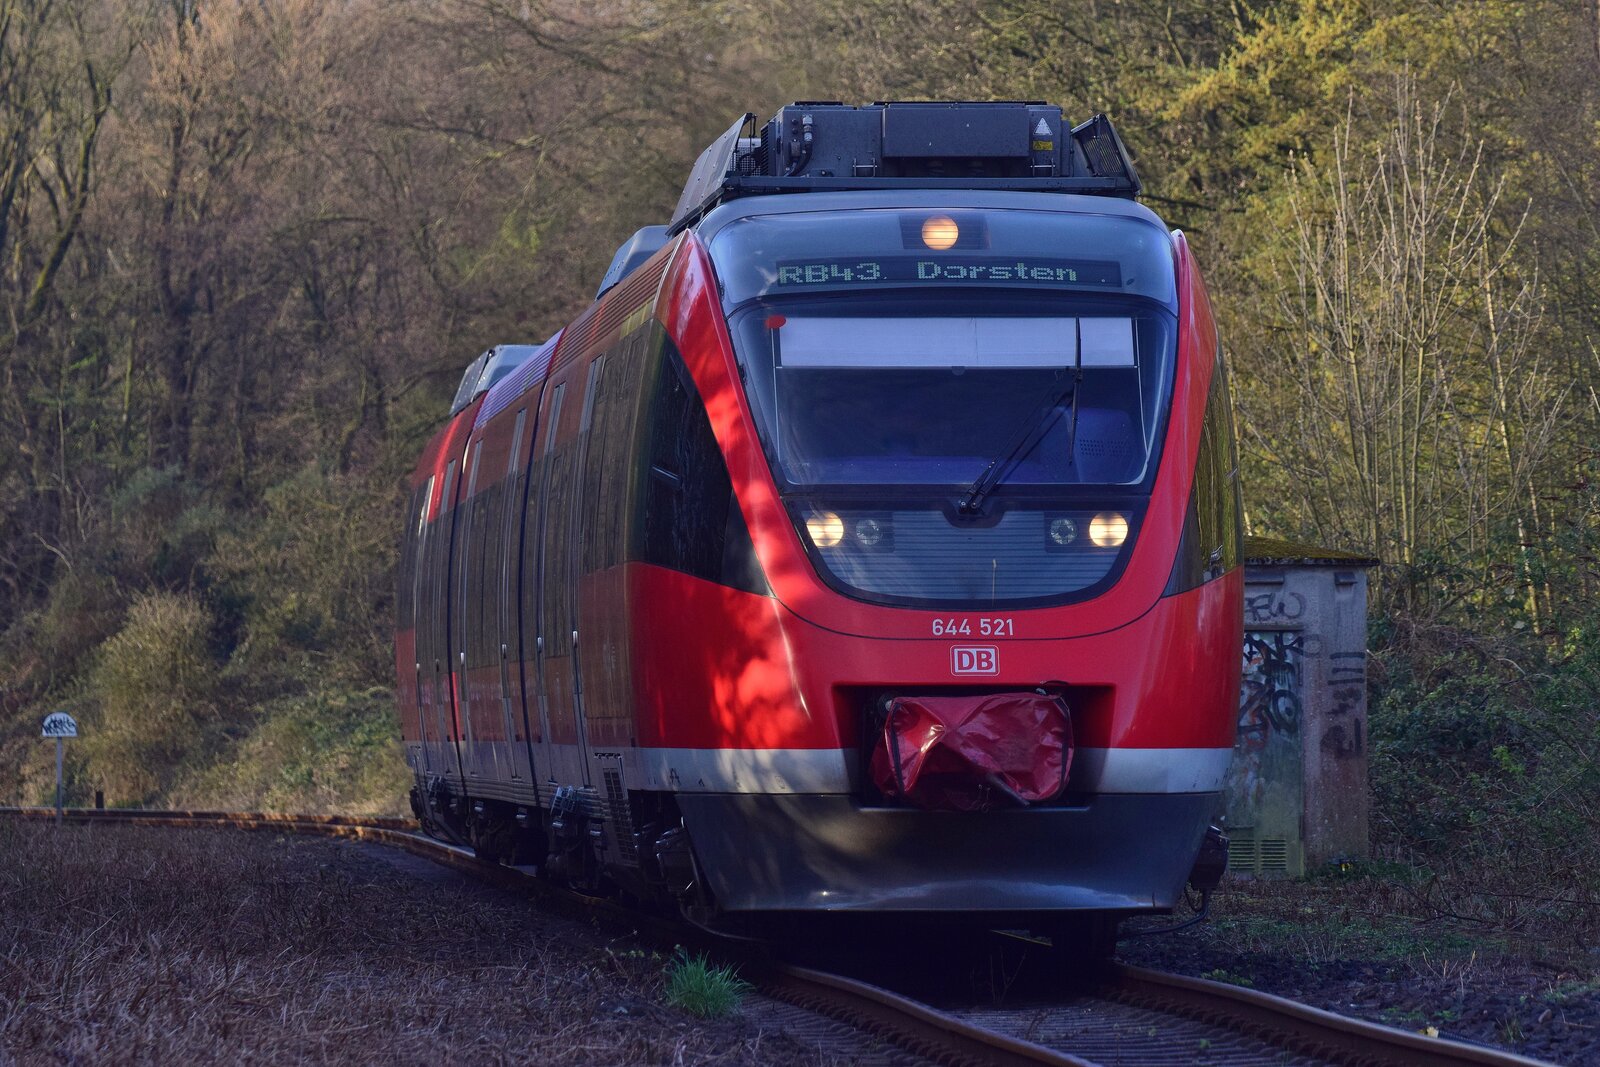 644 021 ist auf der Emschertalbahn unterwegs und erreicht in Kürze Dortmund Bövinghausen. Heute nur noch Blockstelle war Bövinghausen einst Bahnhof. Im Hintergrund zeugt die Ra10 Tafel noch von.

Dortmund Bövinghausen 14.04.2023